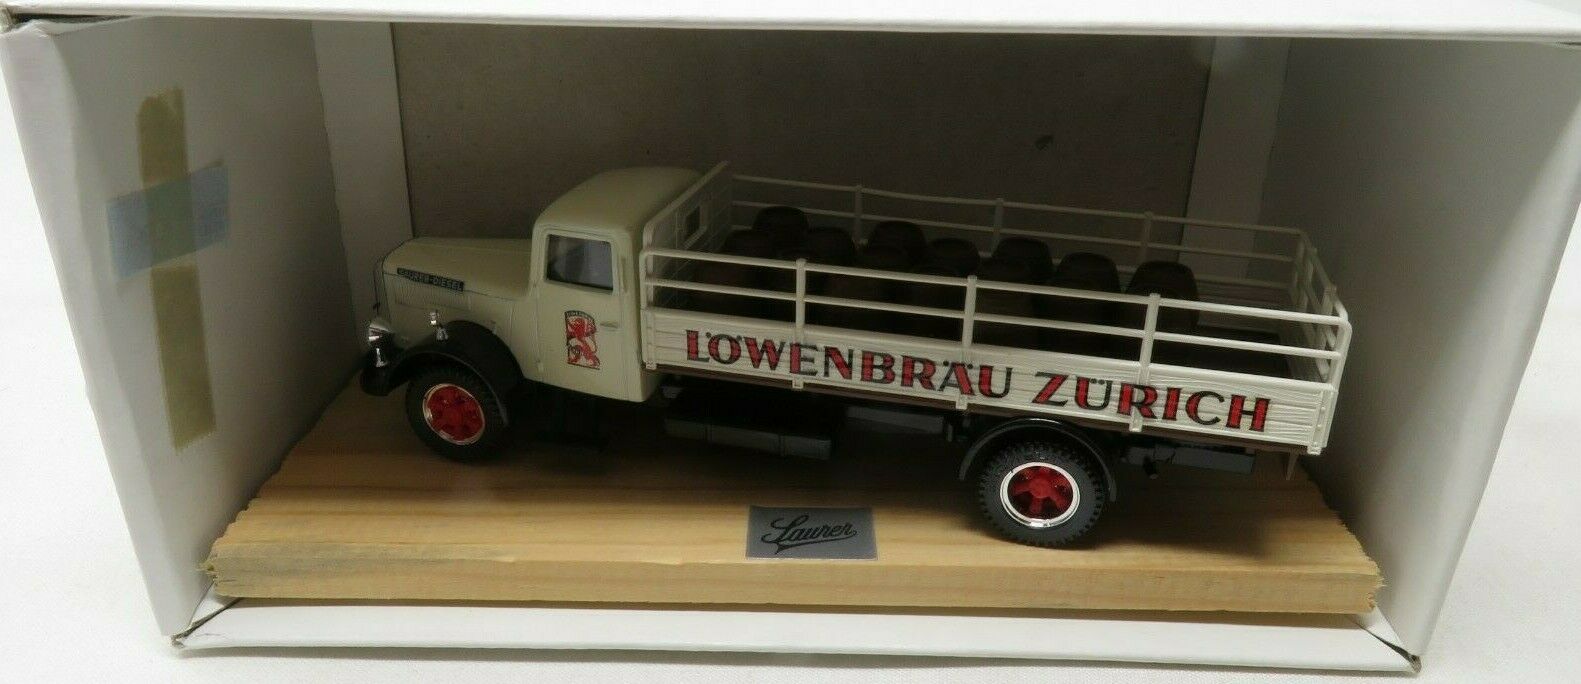 Retro Vitesse 215 DIE CAST-Lowenbrau Zurich "Lowenbrau" S4C 1952 NIB